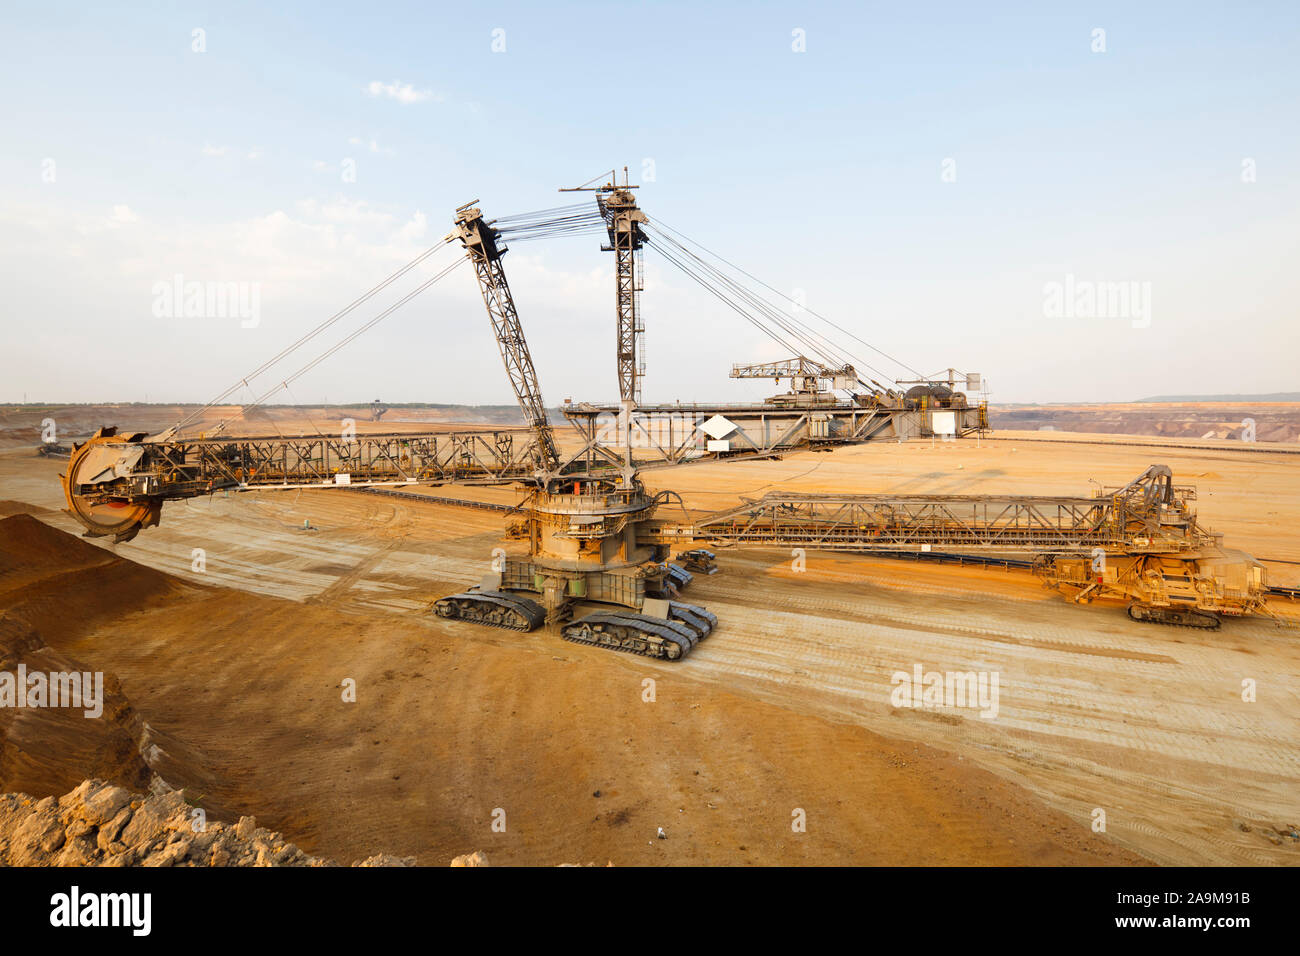 Ein braunkohletagebau Mine mit einem riesigen schaufelradbagger, einer der weltweit größten beweglichen land Fahrzeuge. Stockfoto